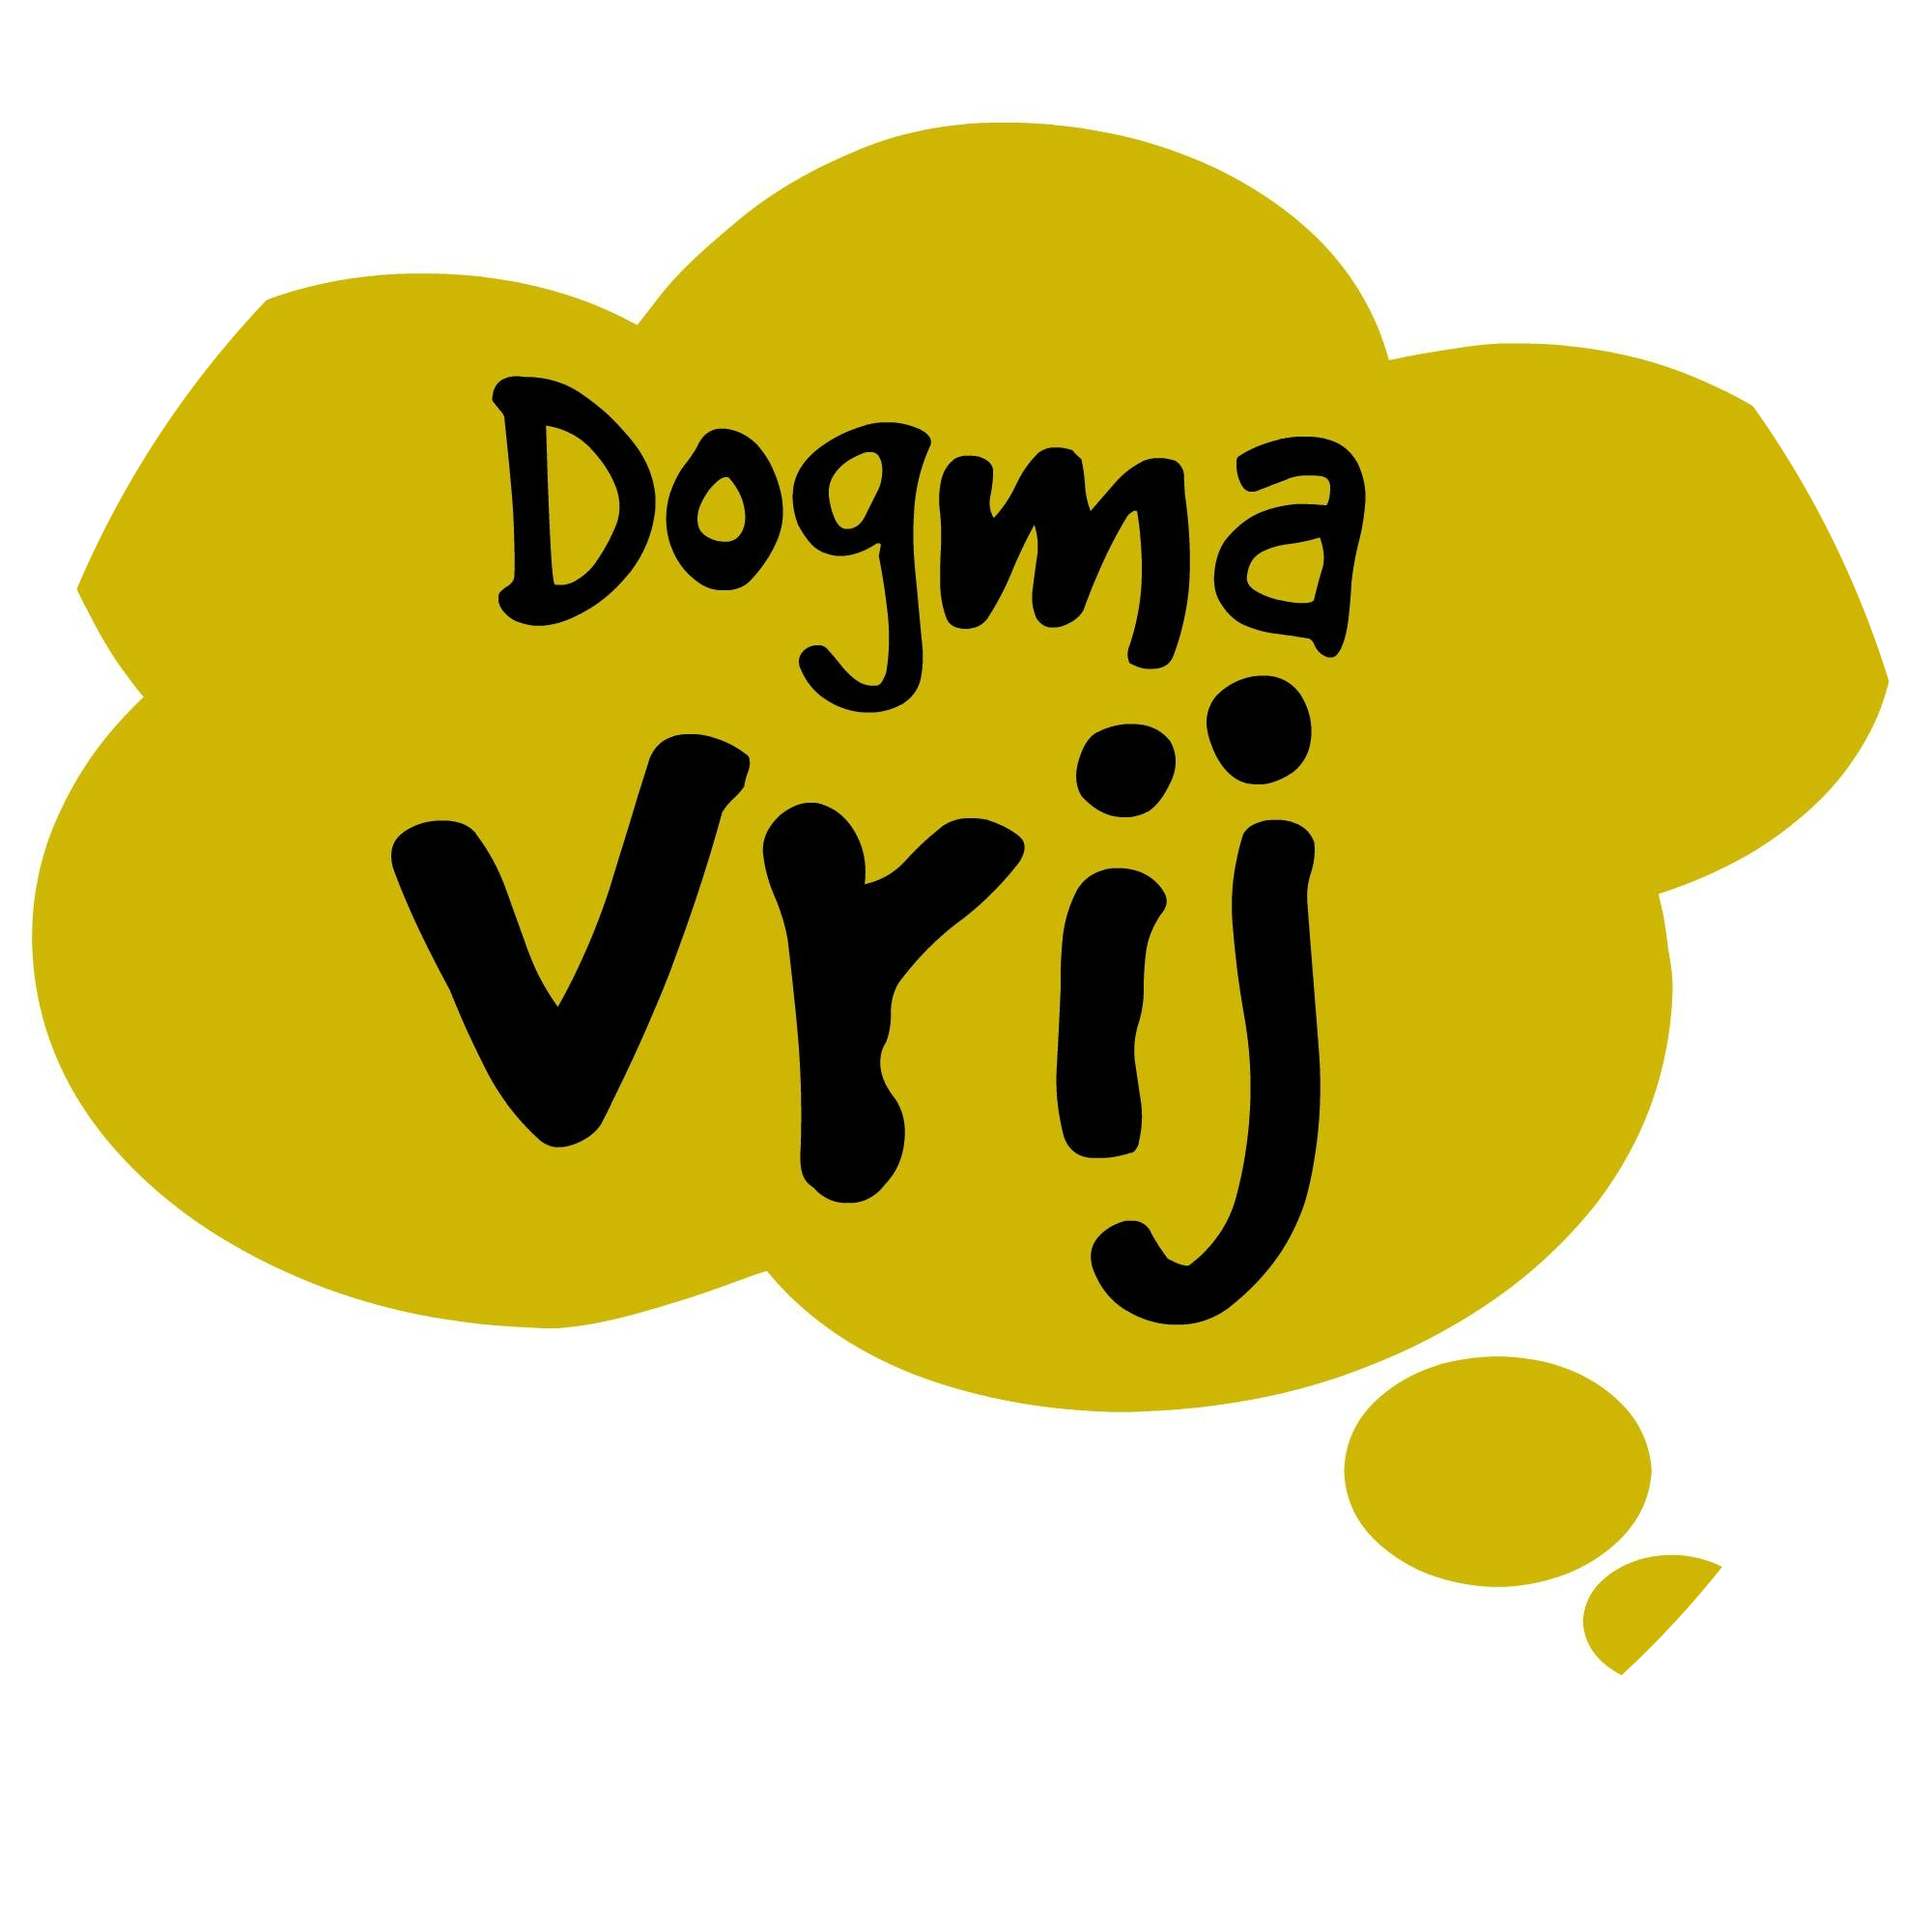 Dogmavrij-logo - Ondersteuning bij religie, sektes, en verwerking van religieus trauma syndroom